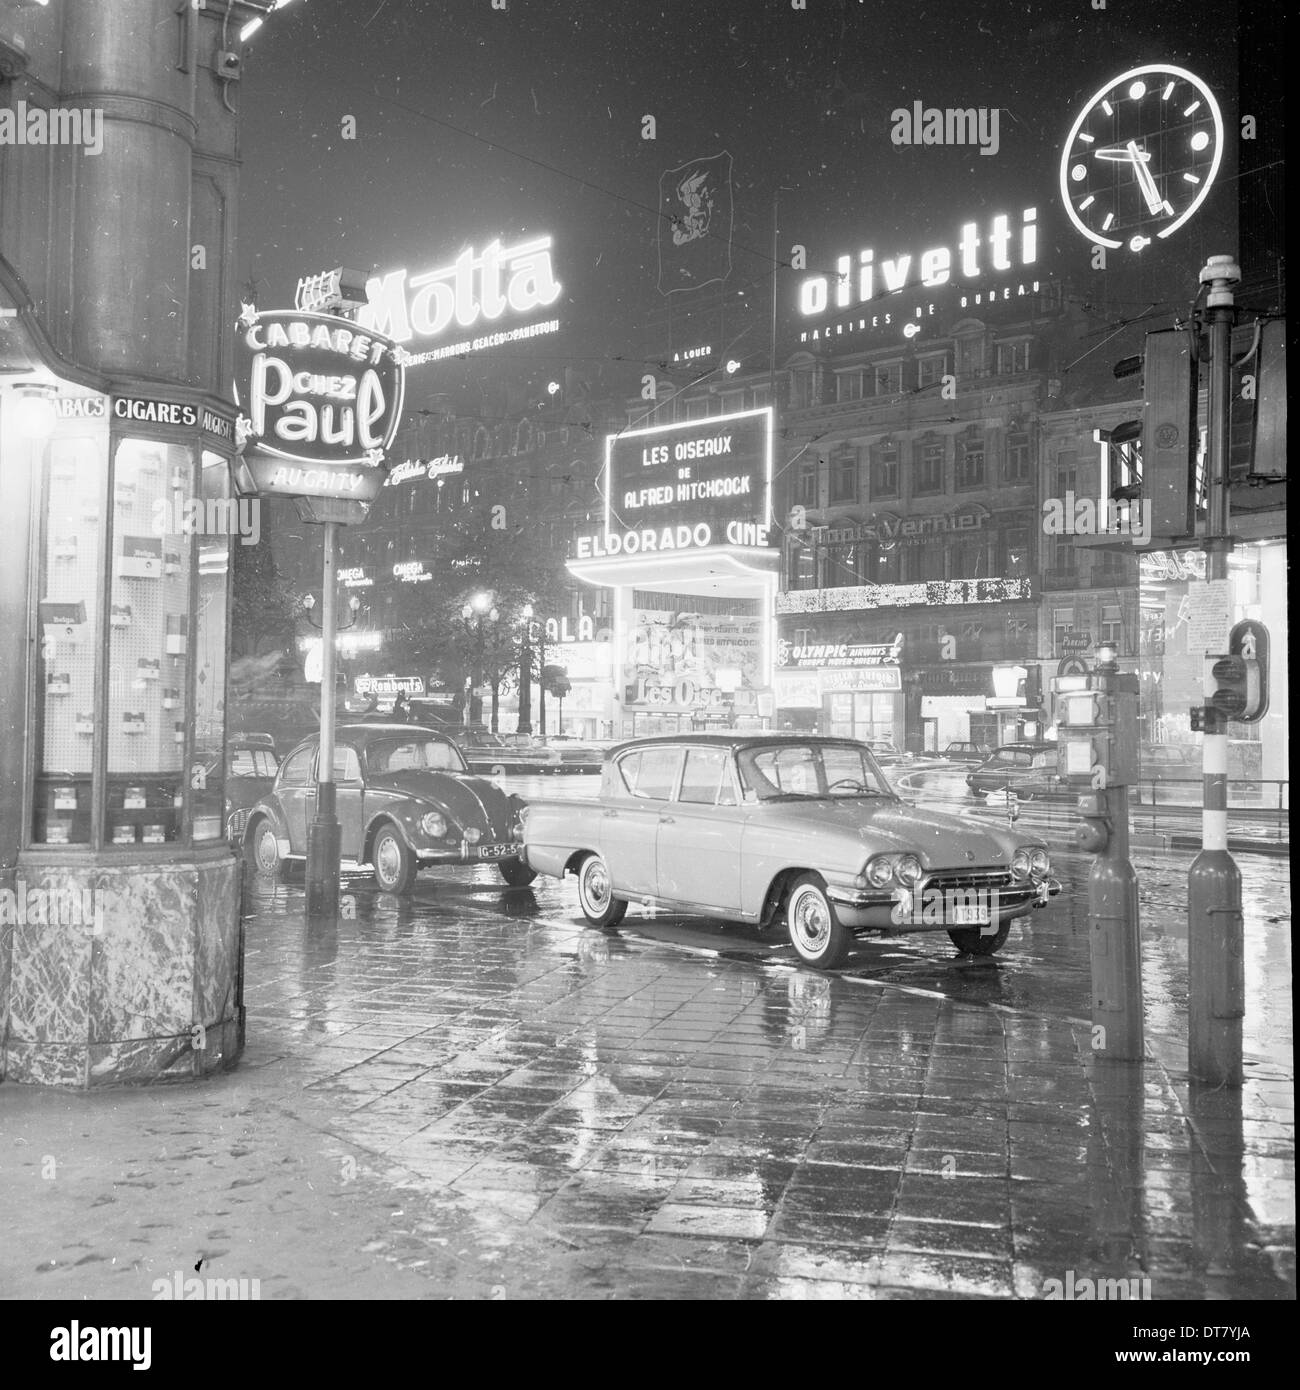 Foto storiche da anni cinquanta che mostra una strada bagnata, serata Bruxelles, Belgio, illuminata da pannelli pubblicitari e segni. Foto Stock